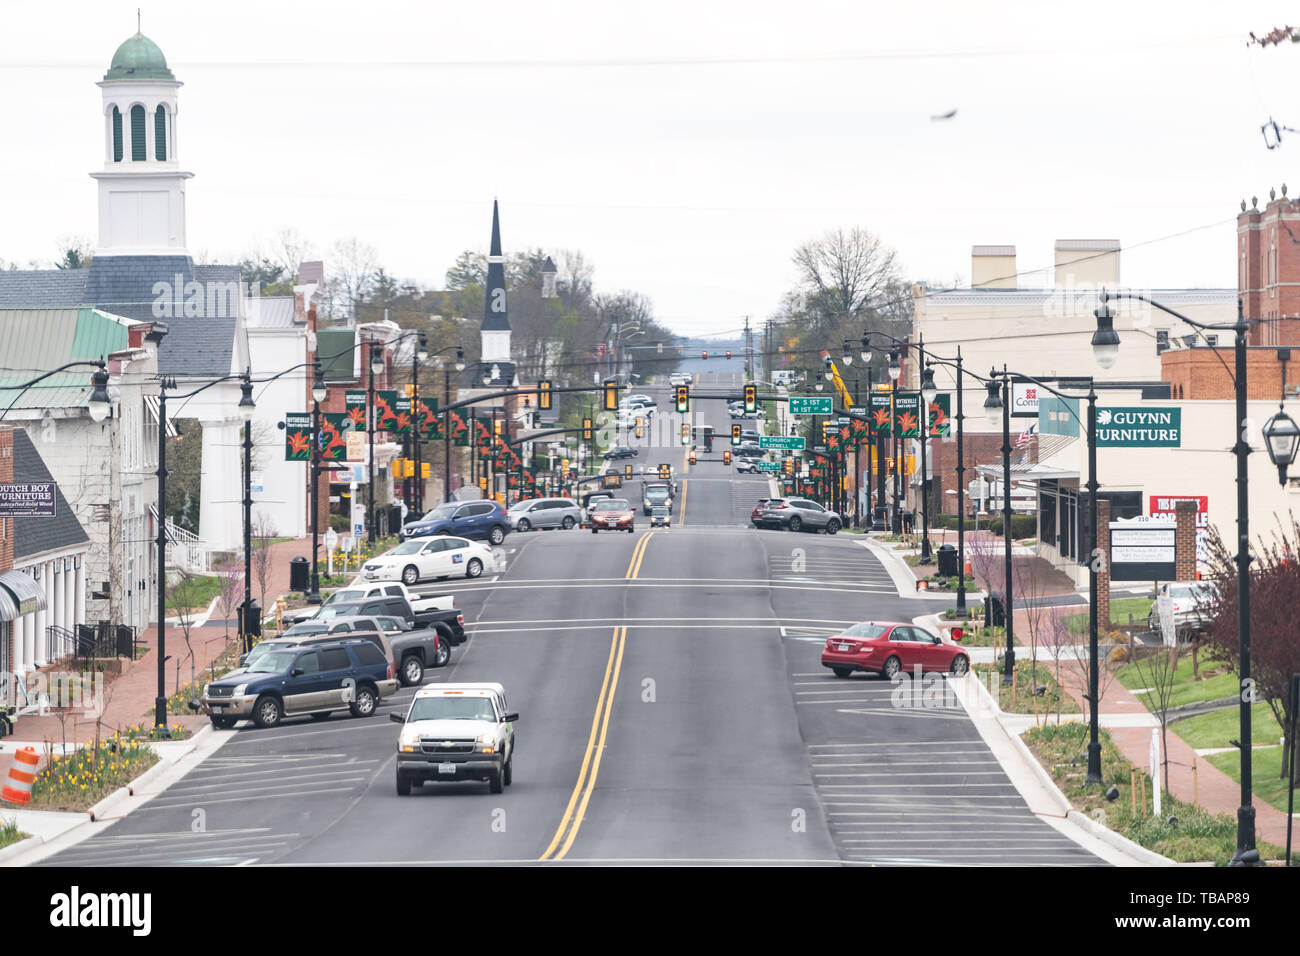 Wytheville, USA - Le 19 avril 2018 : Petite ville village street dans le sud de la Virginie du sud avec ses bâtiments historiques et de l'église paysage urbain Banque D'Images